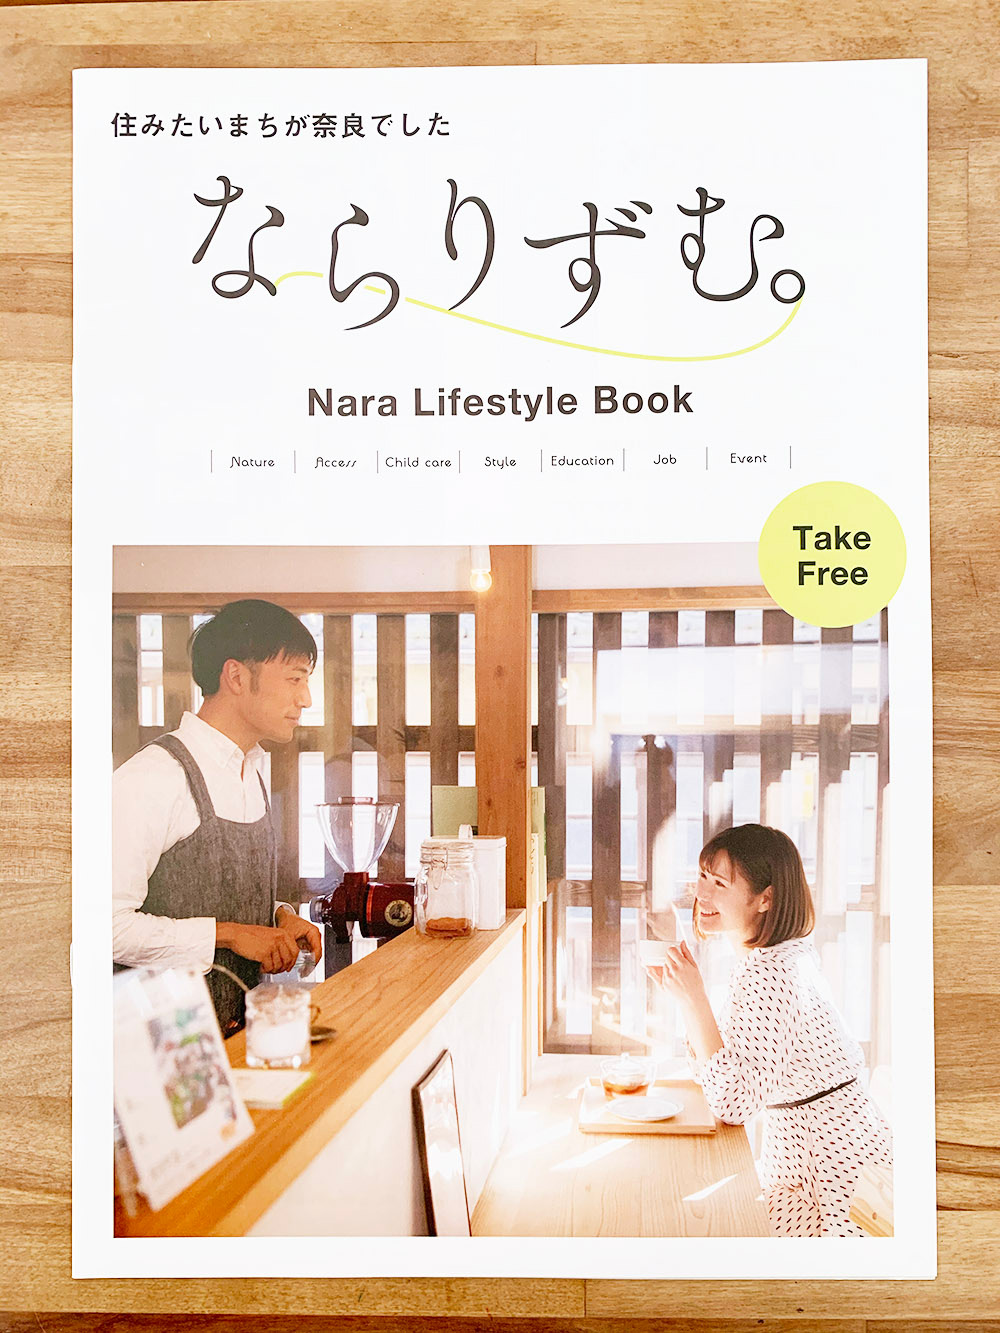 15款轻松惬意的日本杂志封面设计